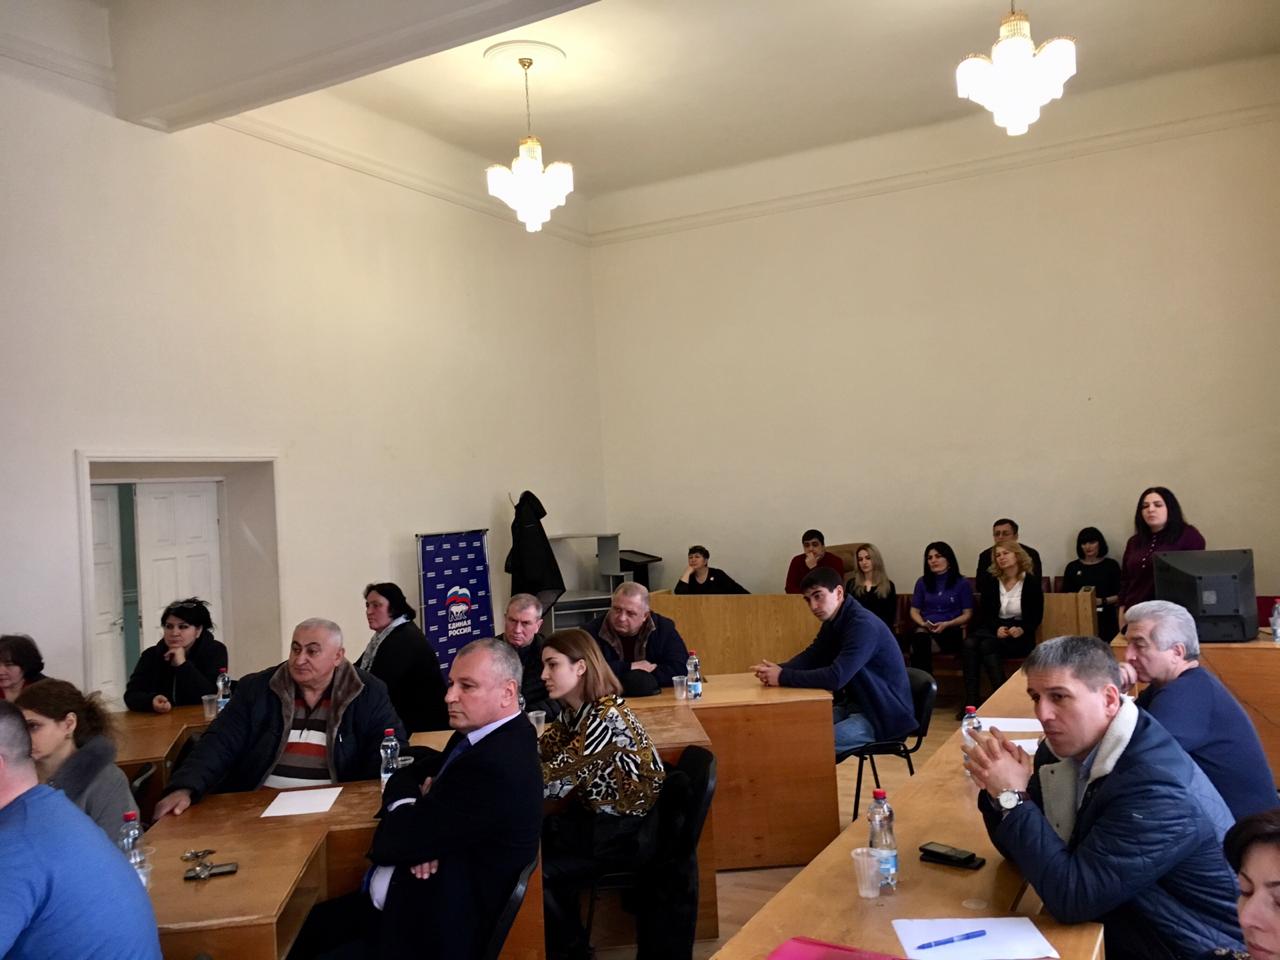 21 января 2019 г. прошёл Совет по предпринимательству при Главе муниципального образования Дигорский район Таболове Александре Таймуразовиче, созданный  по поручению Главы Республики Северная Осетия-Алания в 2018 году.